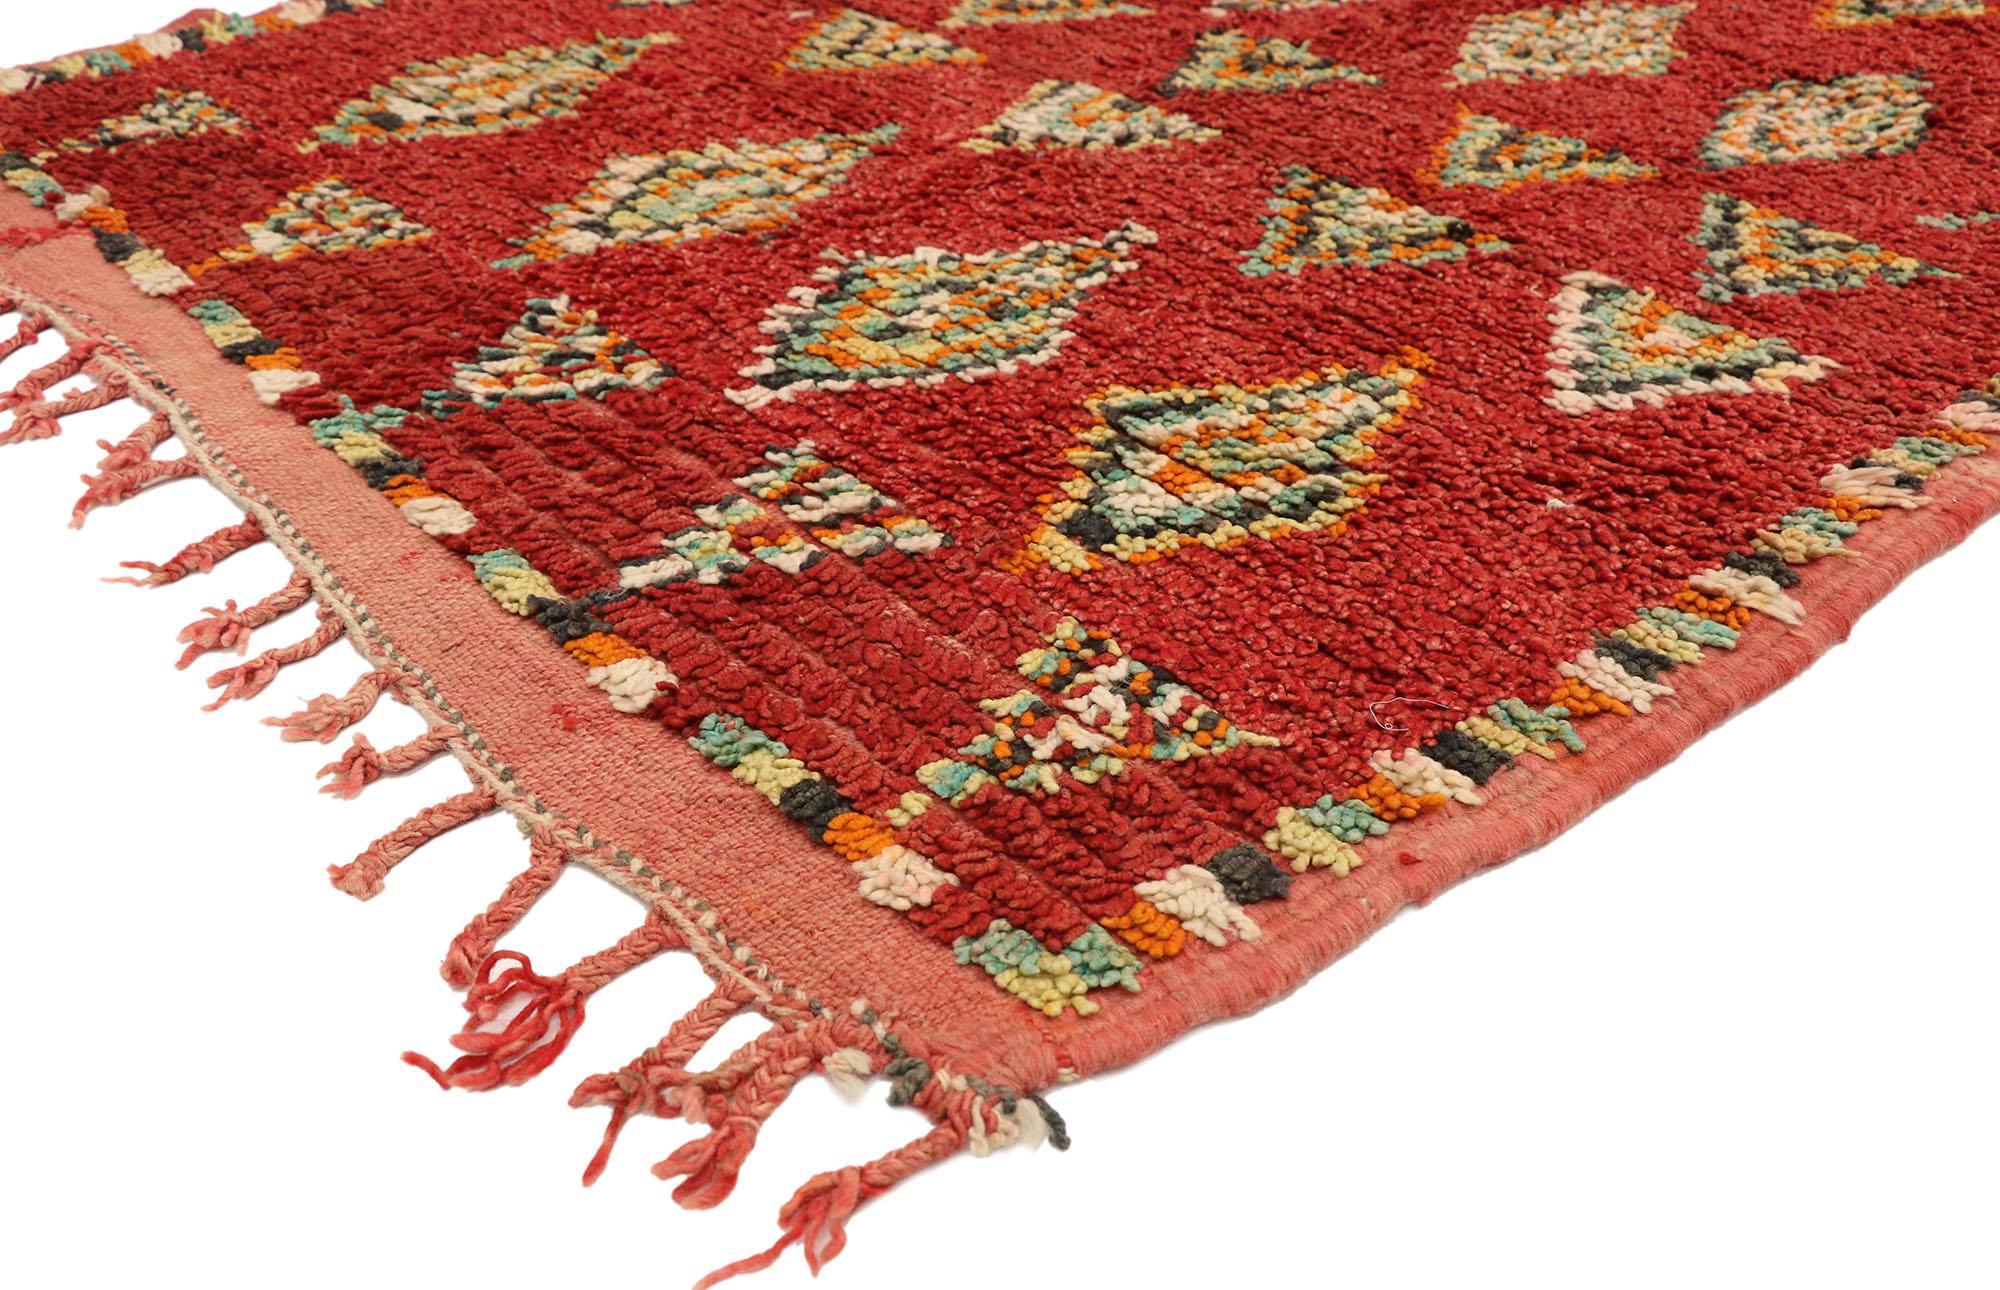 20168 Vintage Red Moroccan Azilal Rug Runner, 04'00 x 12'01. Die roten marokkanischen Azilal-Teppiche sind exquisite Beispiele traditioneller marokkanischer Handwerkskunst, die von versierten Berberhandwerkern aus der Azilal-Region in Marokko